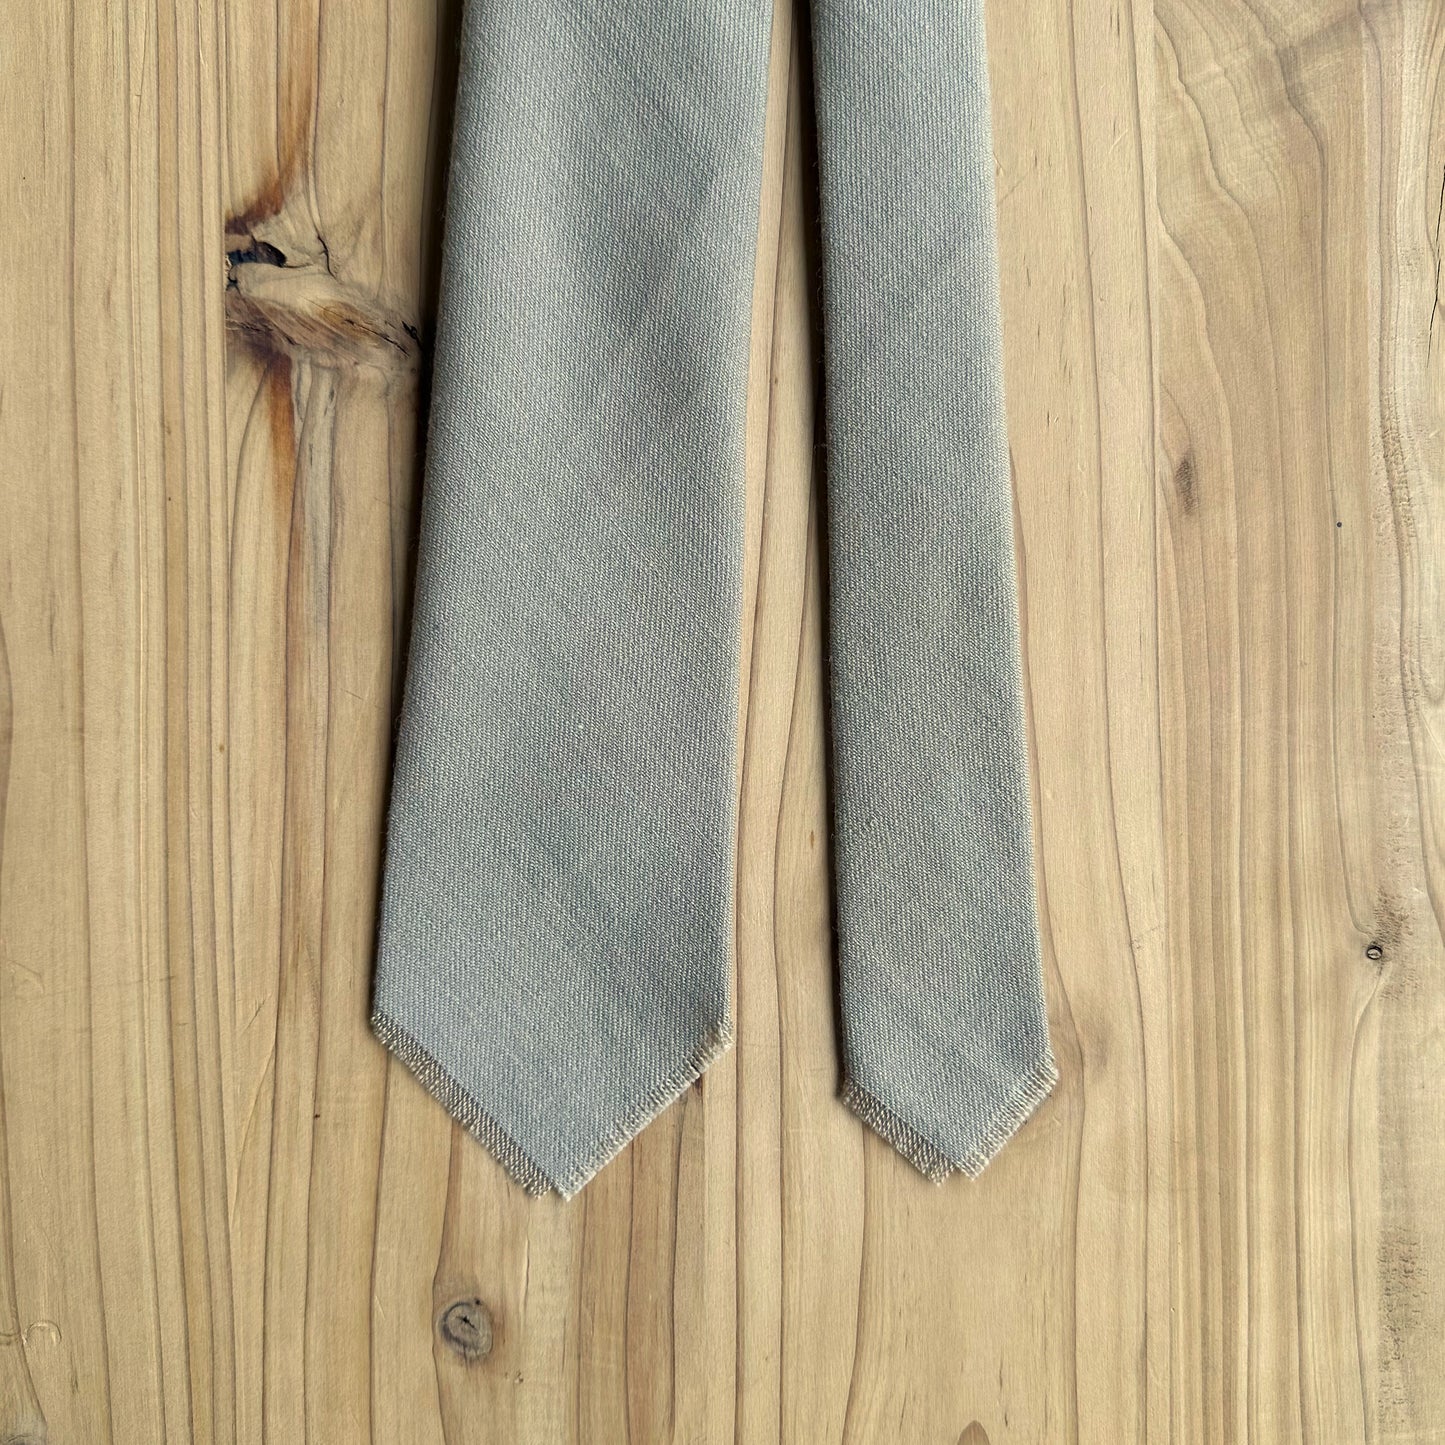 Lana vintage de corbata con flecos a mano